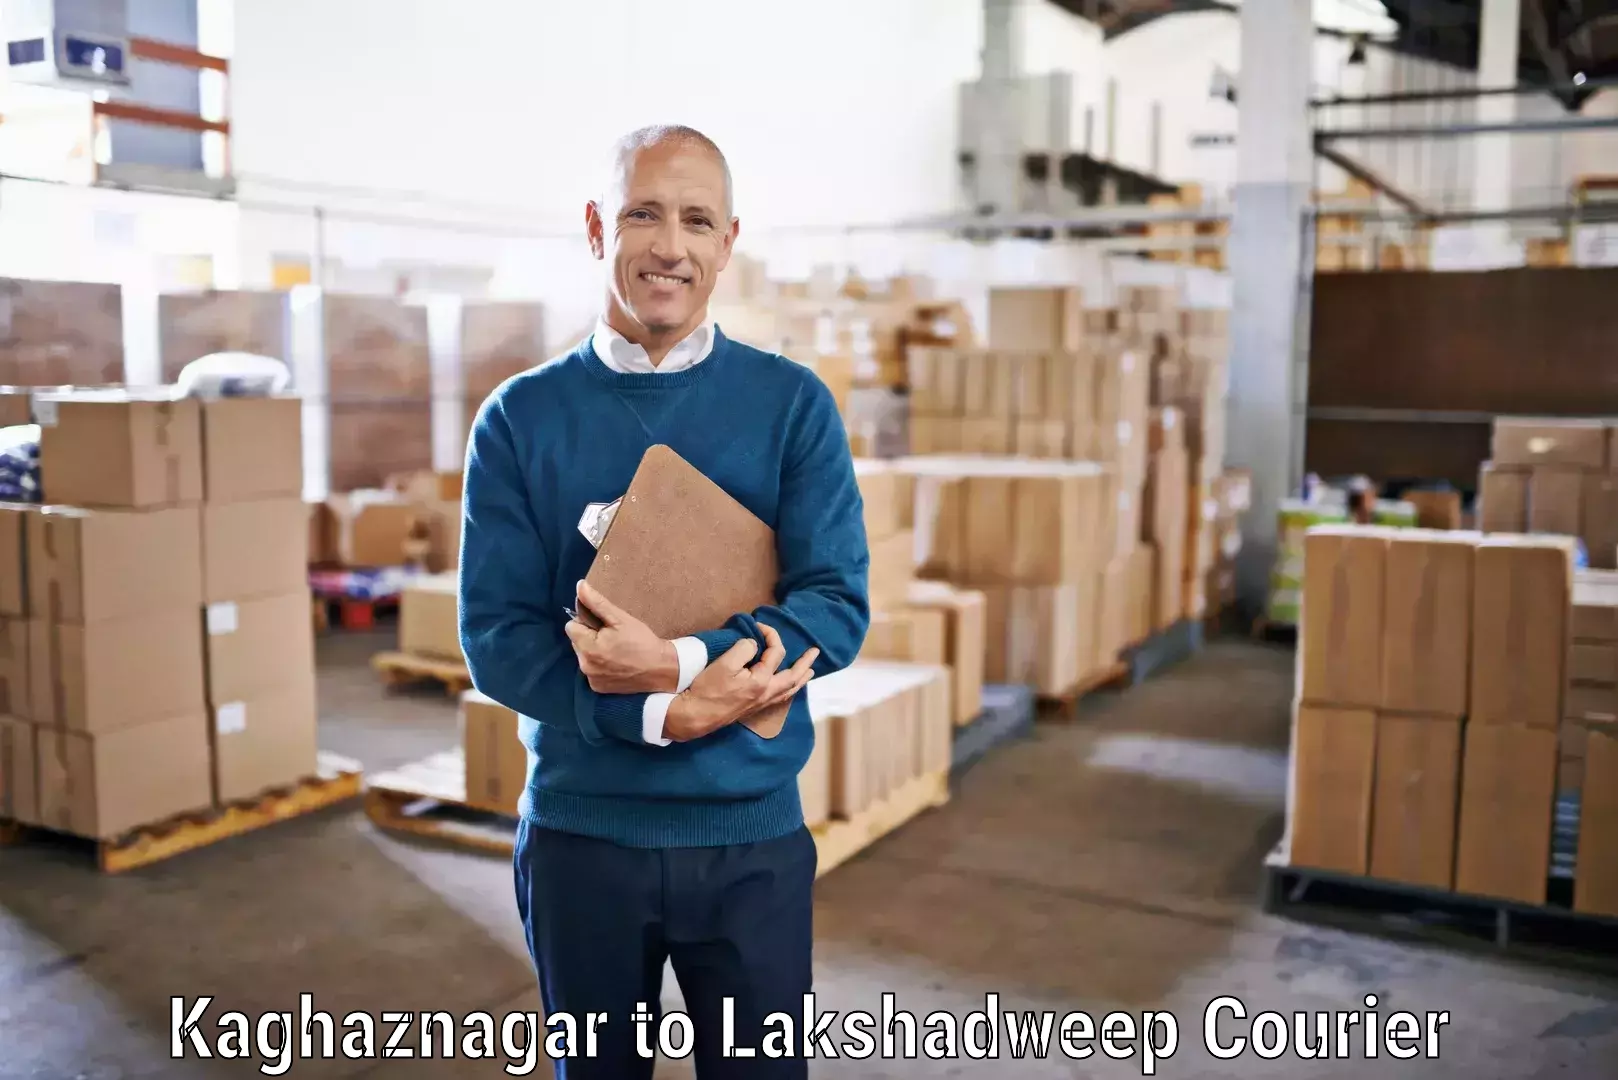 Secure shipping methods Kaghaznagar to Lakshadweep